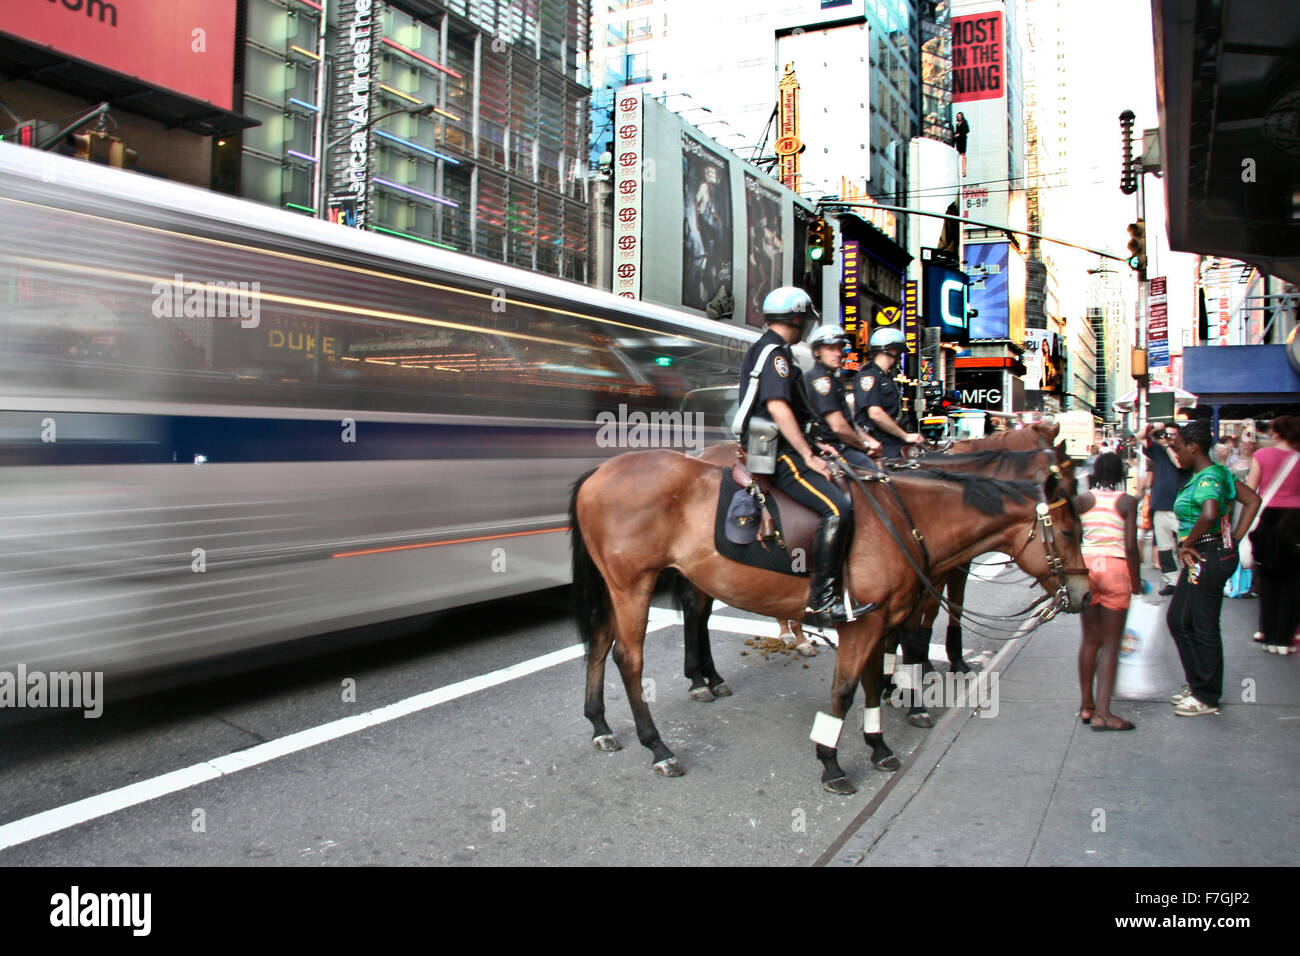 La CIUDAD DE NUEVA YORK - 26 DE JUNIO: policías montar sus caballos en el centro de Nueva York, en la calle principal, Manhattan el 26 de junio de 2008, Foto de stock